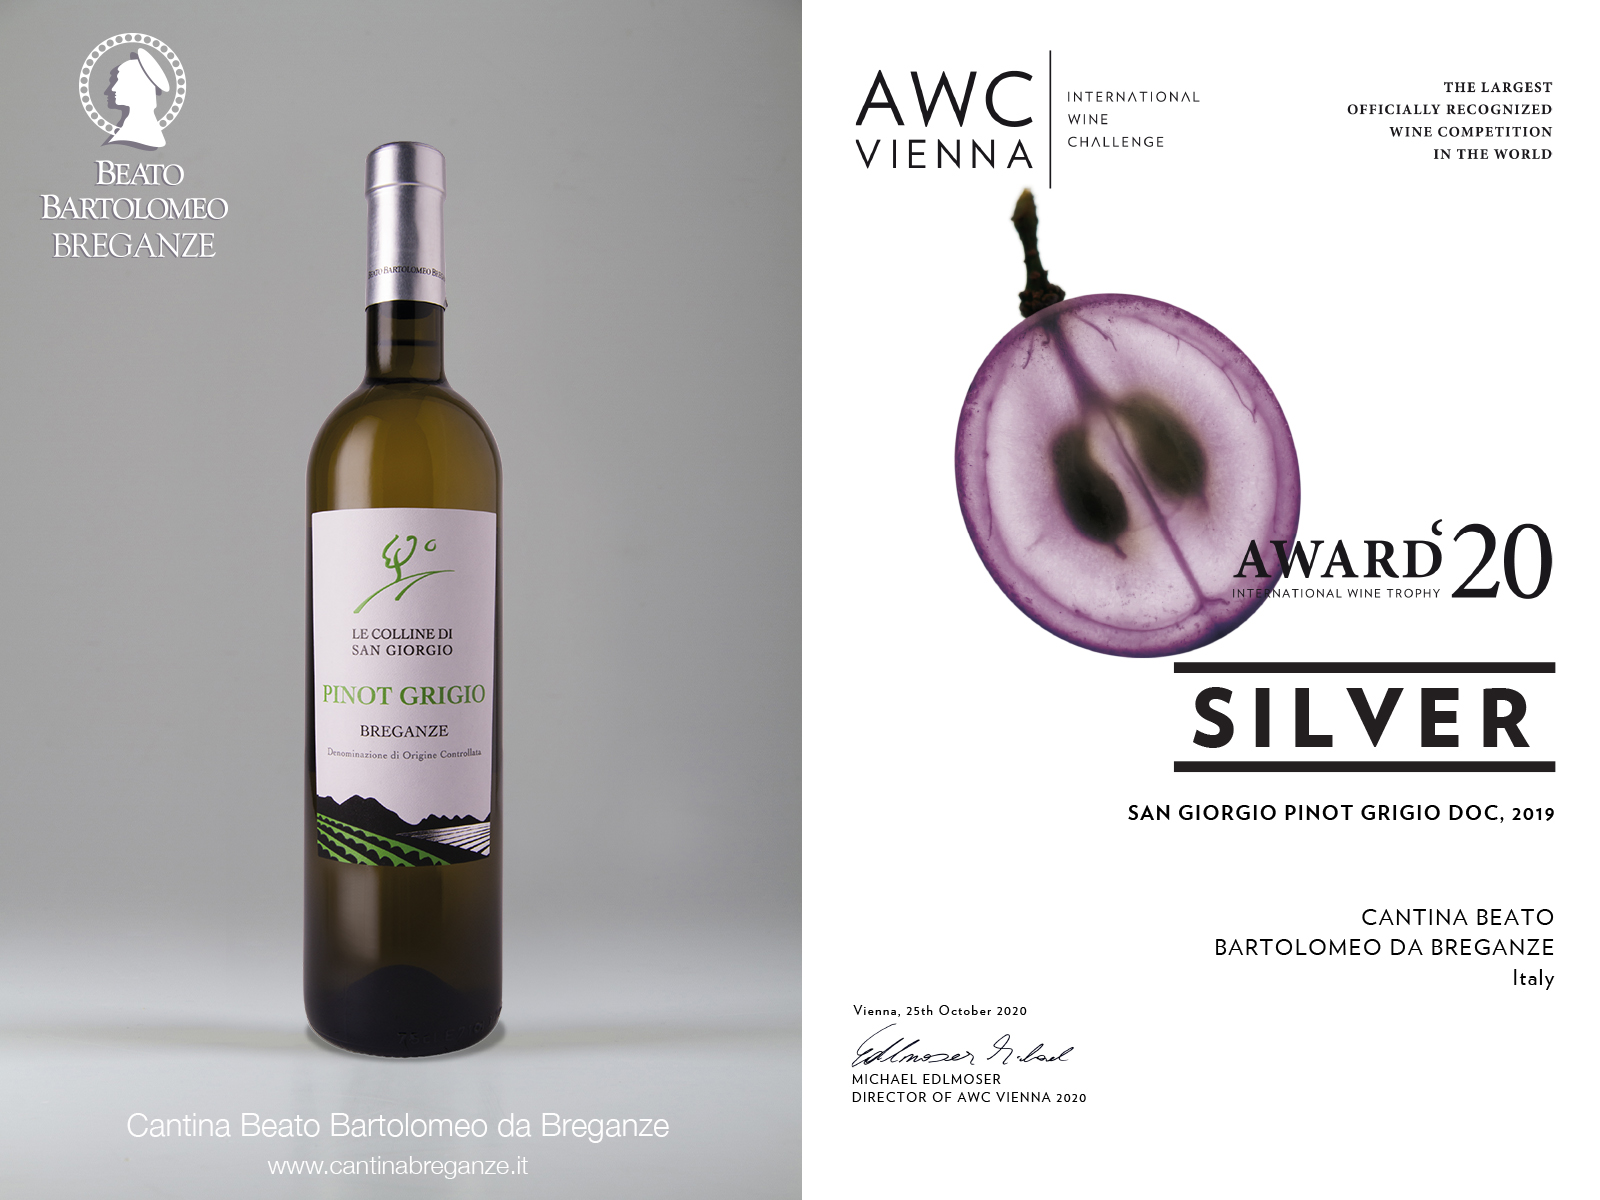 Pinot Grigio Breganze DOC “Le Colline di San Giorgio” AWC Vienna 2020